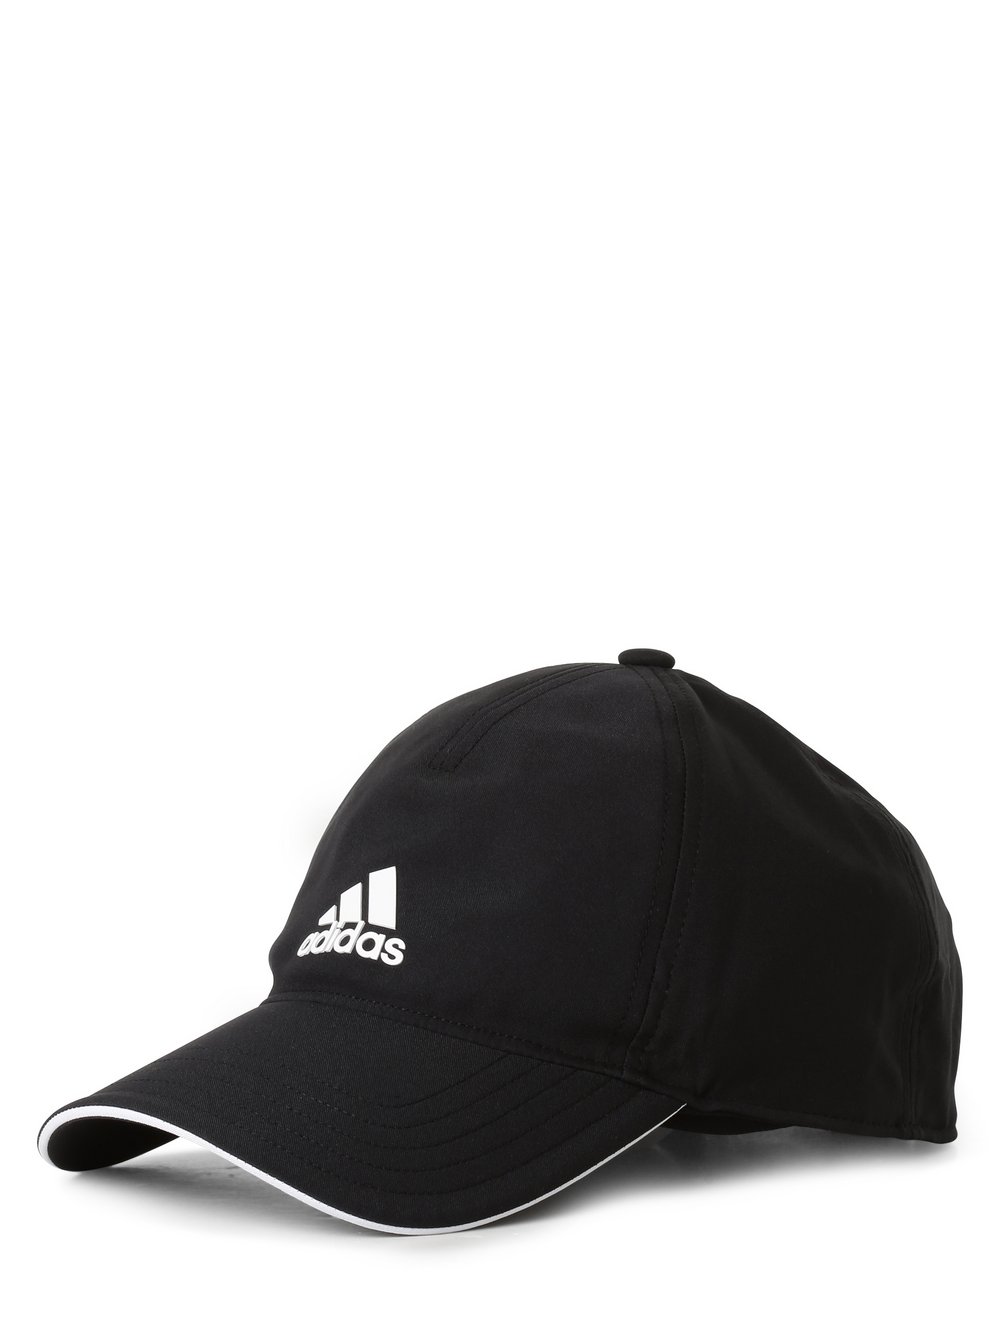 Adidas Performance - Męska czapka z daszkiem, czarny